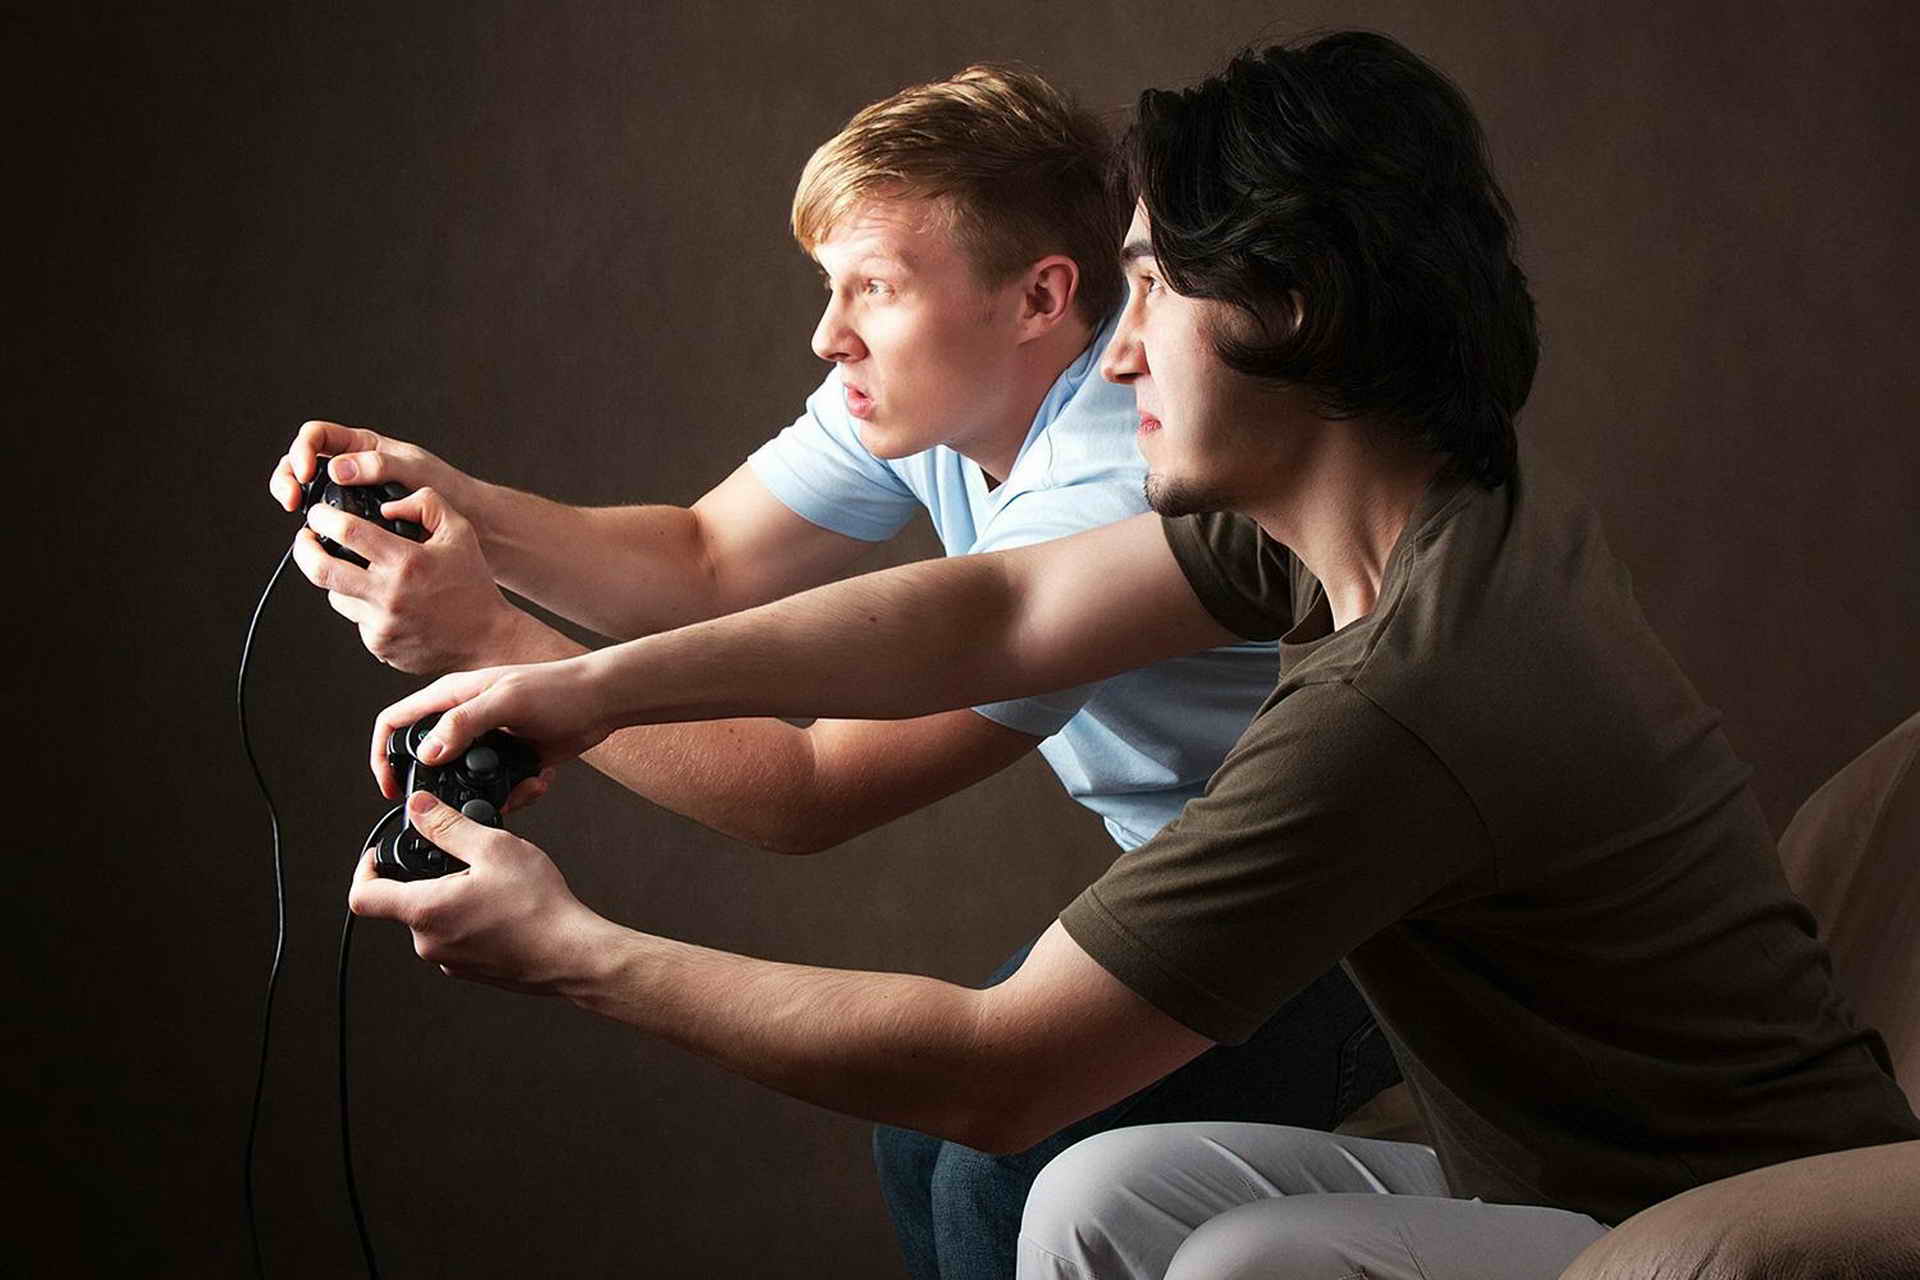 Играть в видеоигры. Игровая зависимость. Зависимость от компьютерных игр. Человек играющий в компьютерные игры. Зависимость от видеоигр.